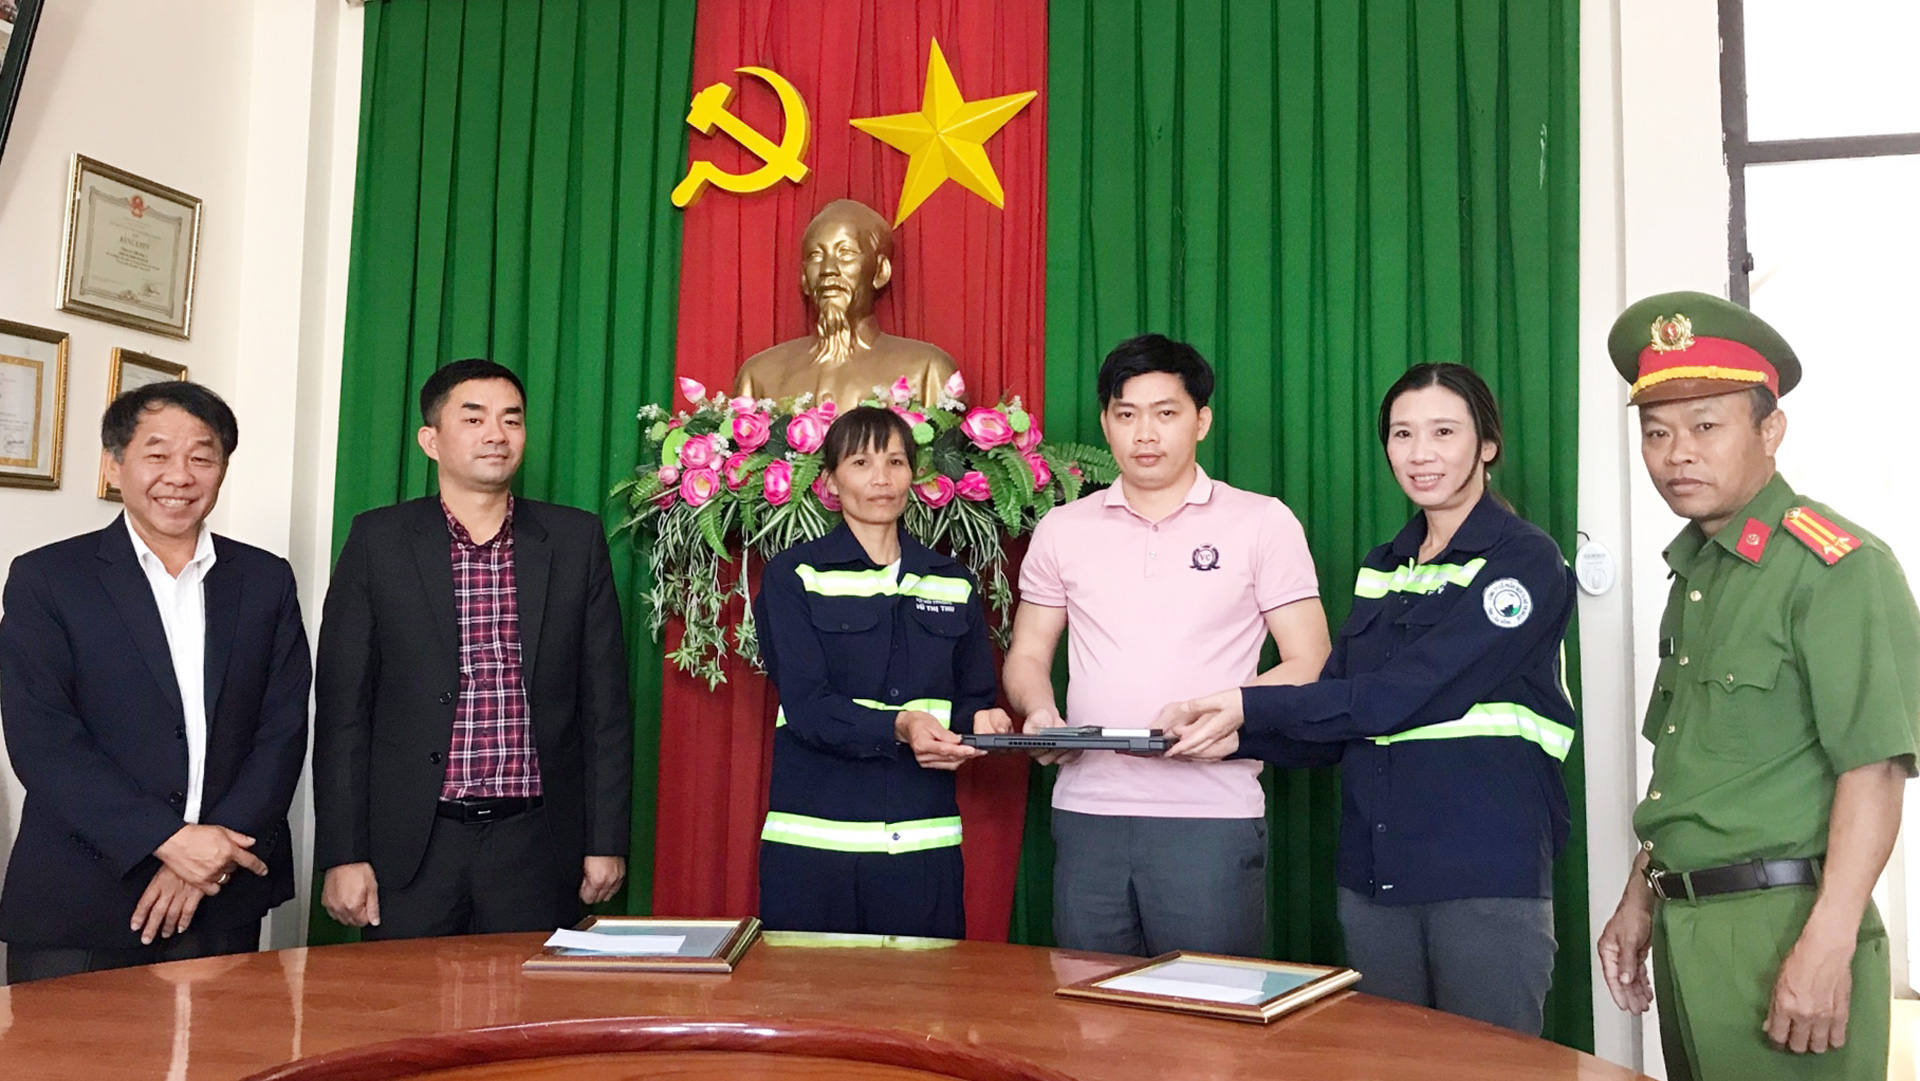 Chị Vũ Thị Thu và chị Khiếu Nữ Thị Thanh Chúc trao trả toàn bộ số tiền cùng laptop và những giấy tờ liên quan cho anh Võ Thanh Vương